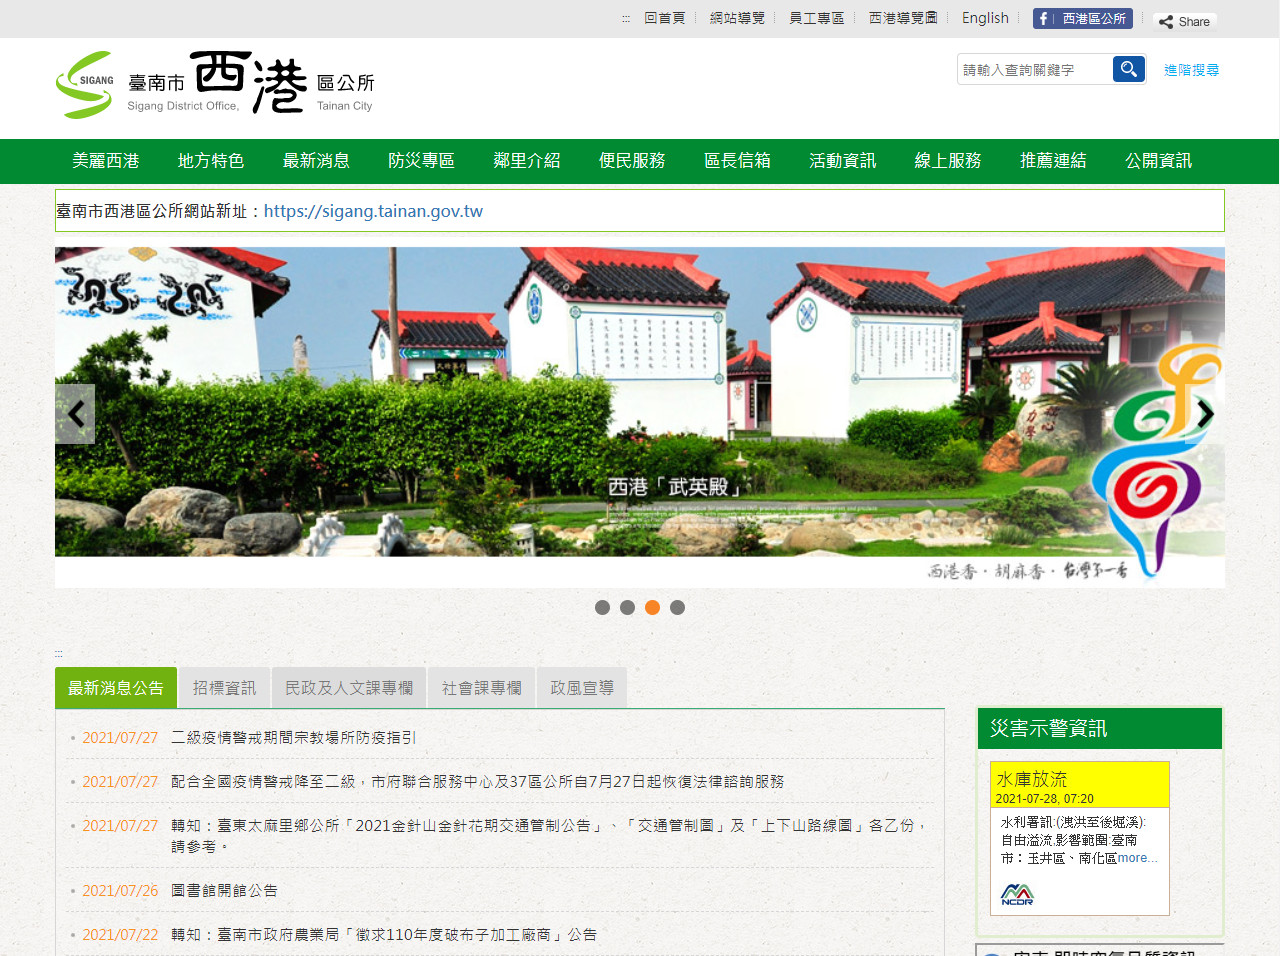 臺南市西港區公所 政府機關無障礙2.0網站設計
網站設計